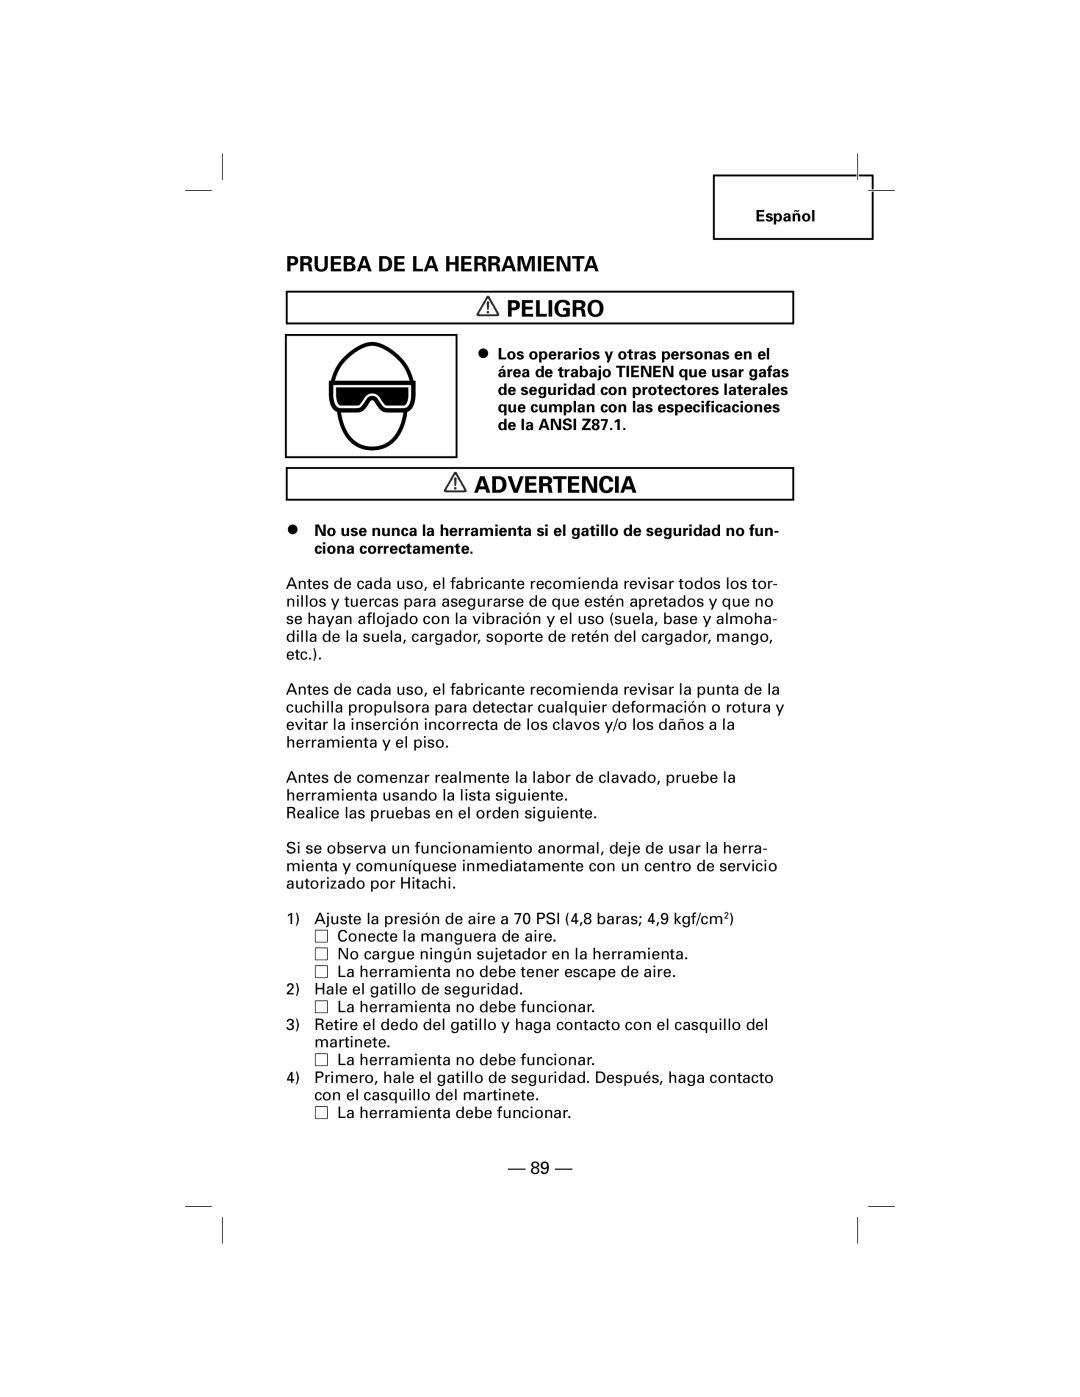 Hitachi NT50AF, N5009AF manual Prueba De La Herramienta, Peligro, Advertencia 